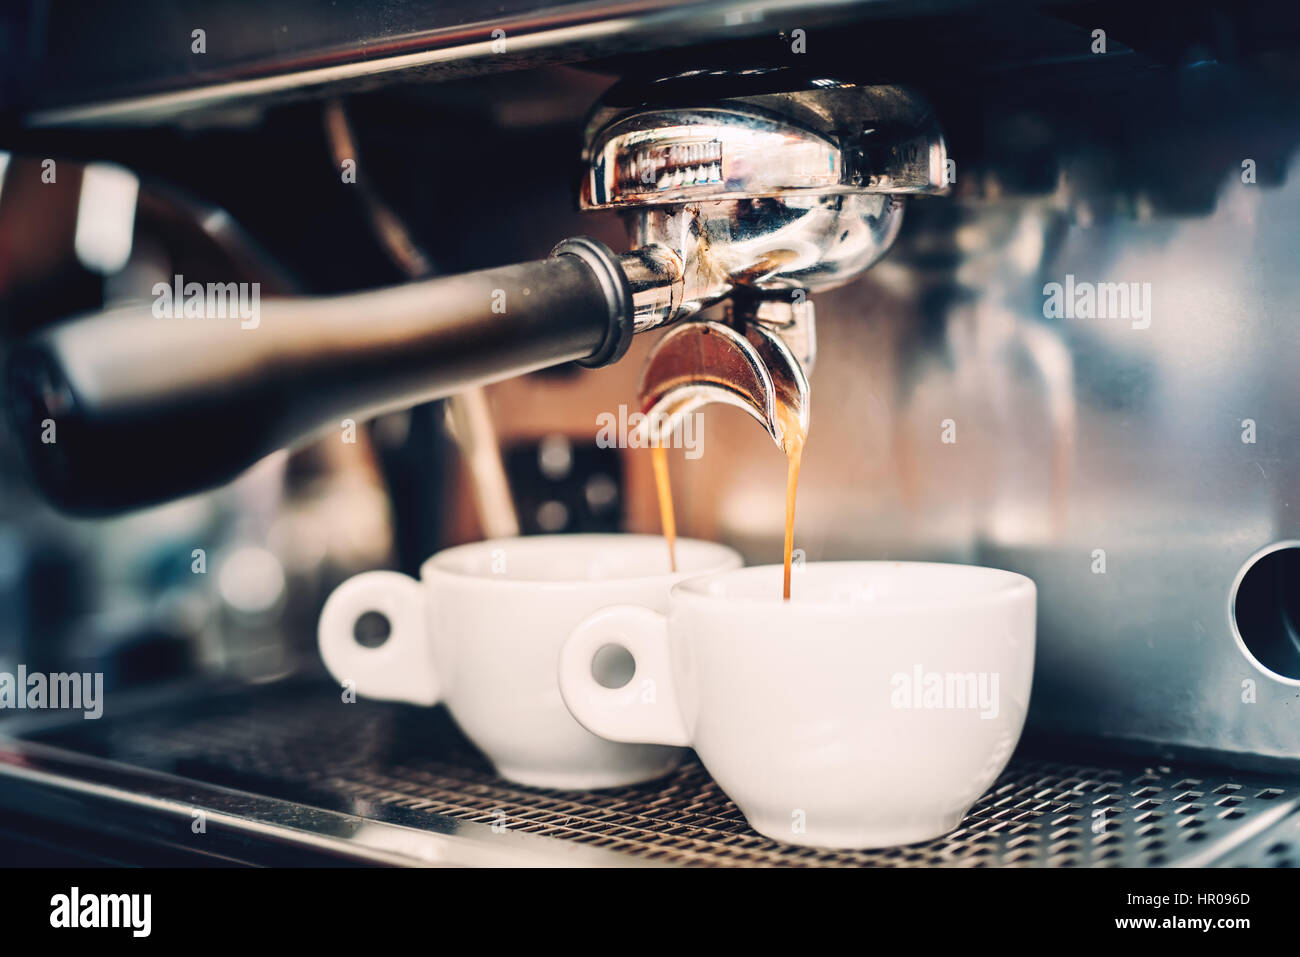 Proffessional brauen - Kaffee bar Details. Espressokaffee aus Espresso-Maschine  gießen. Barista-Details im café Stockfotografie - Alamy